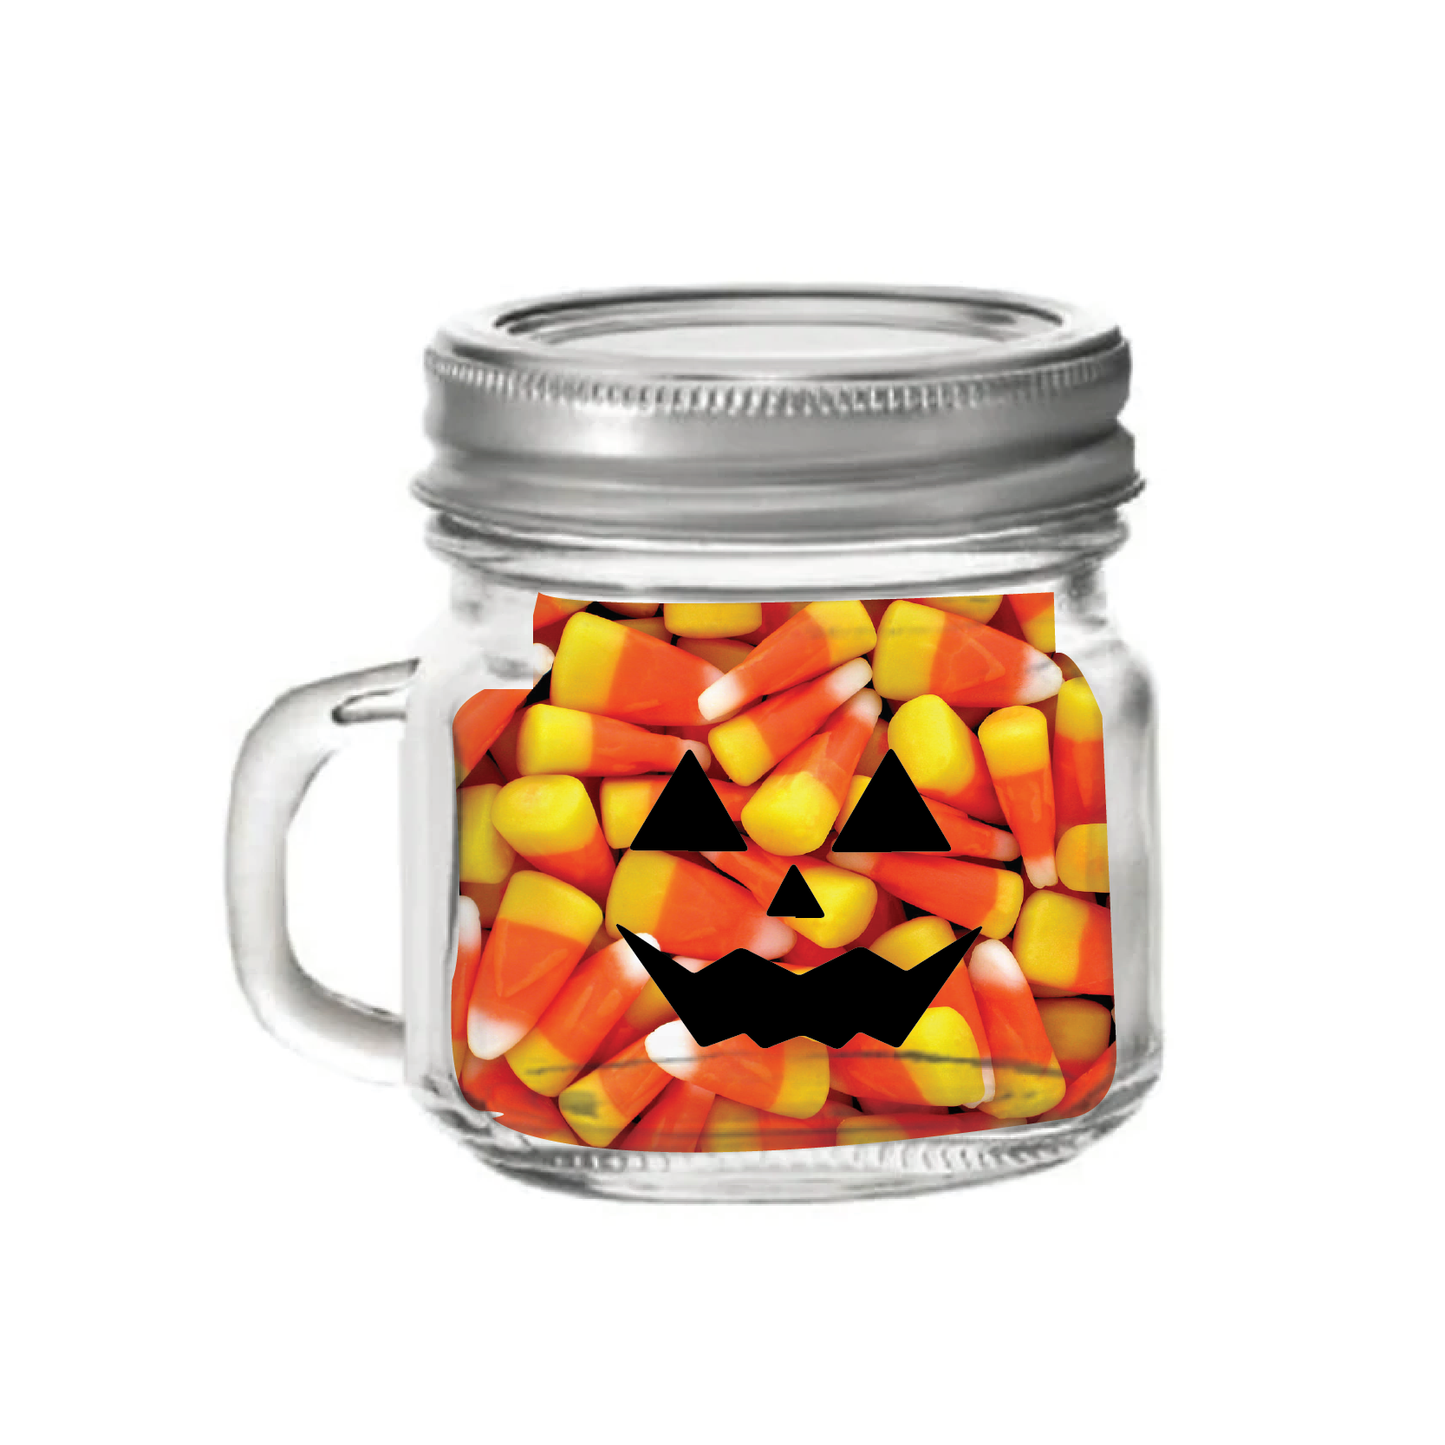 Halloween Scary Pumpkin Food Safe Glass Mason Jar